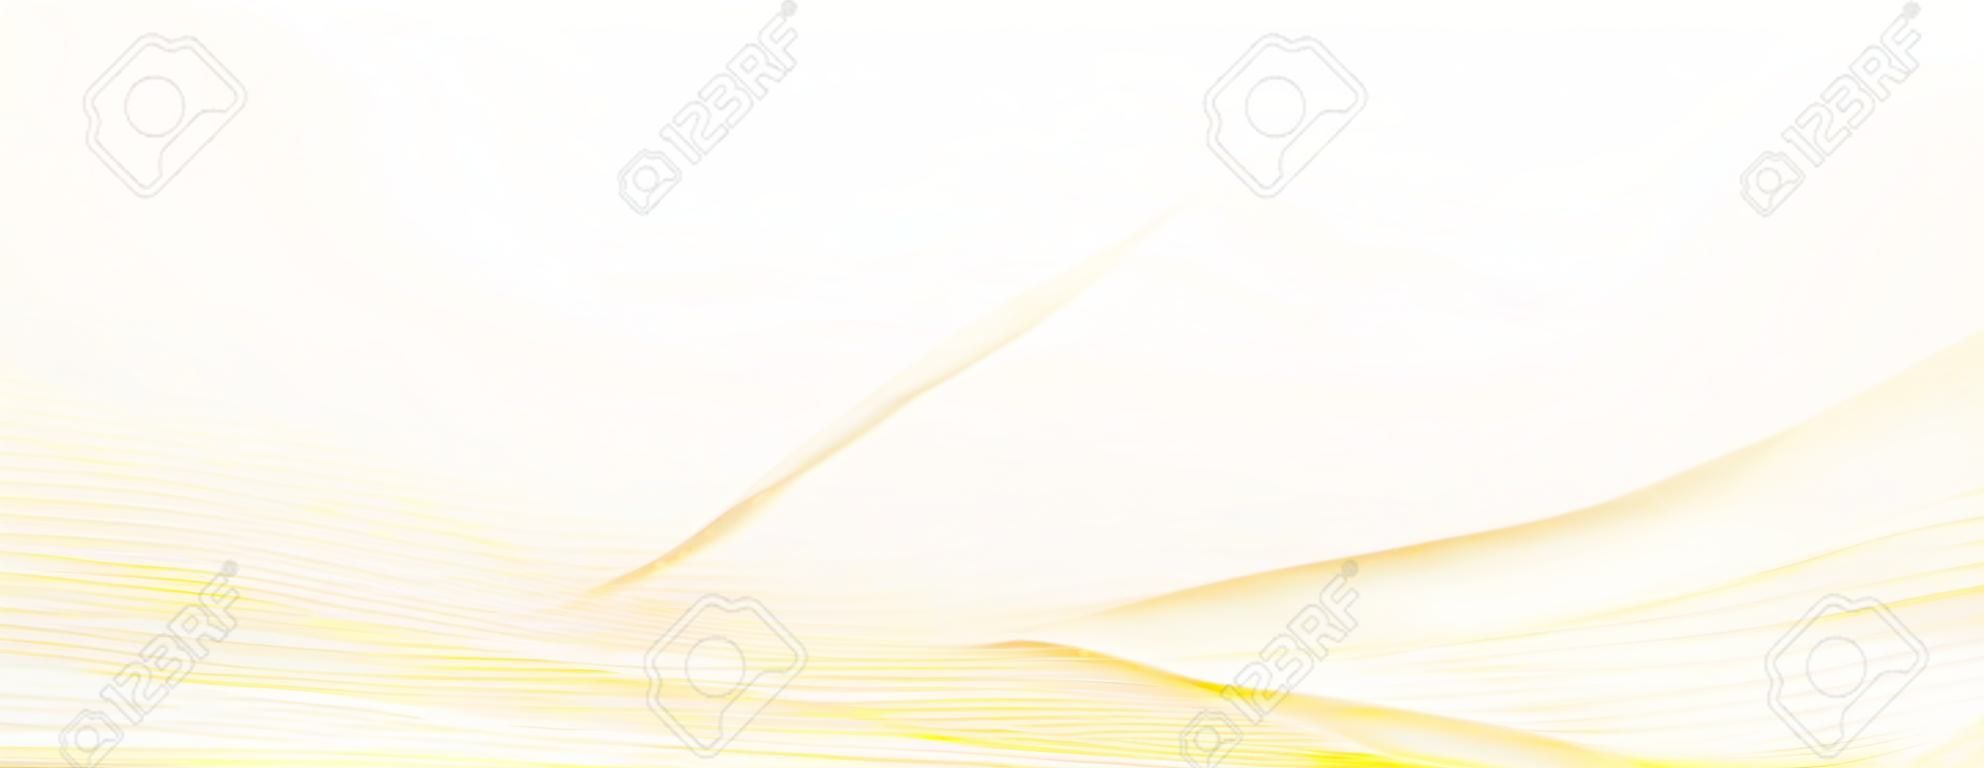 Vermelho claro, padrão de rede amarela, guilloche. Marca d'água colorida pastel. Fluindo linhas sutis, curvas de squiggle. Fundo moderno do vetor. Design abstrato para verificação, voucher, cartão de presente, certificado, landing page, banner, flyer. ilustração